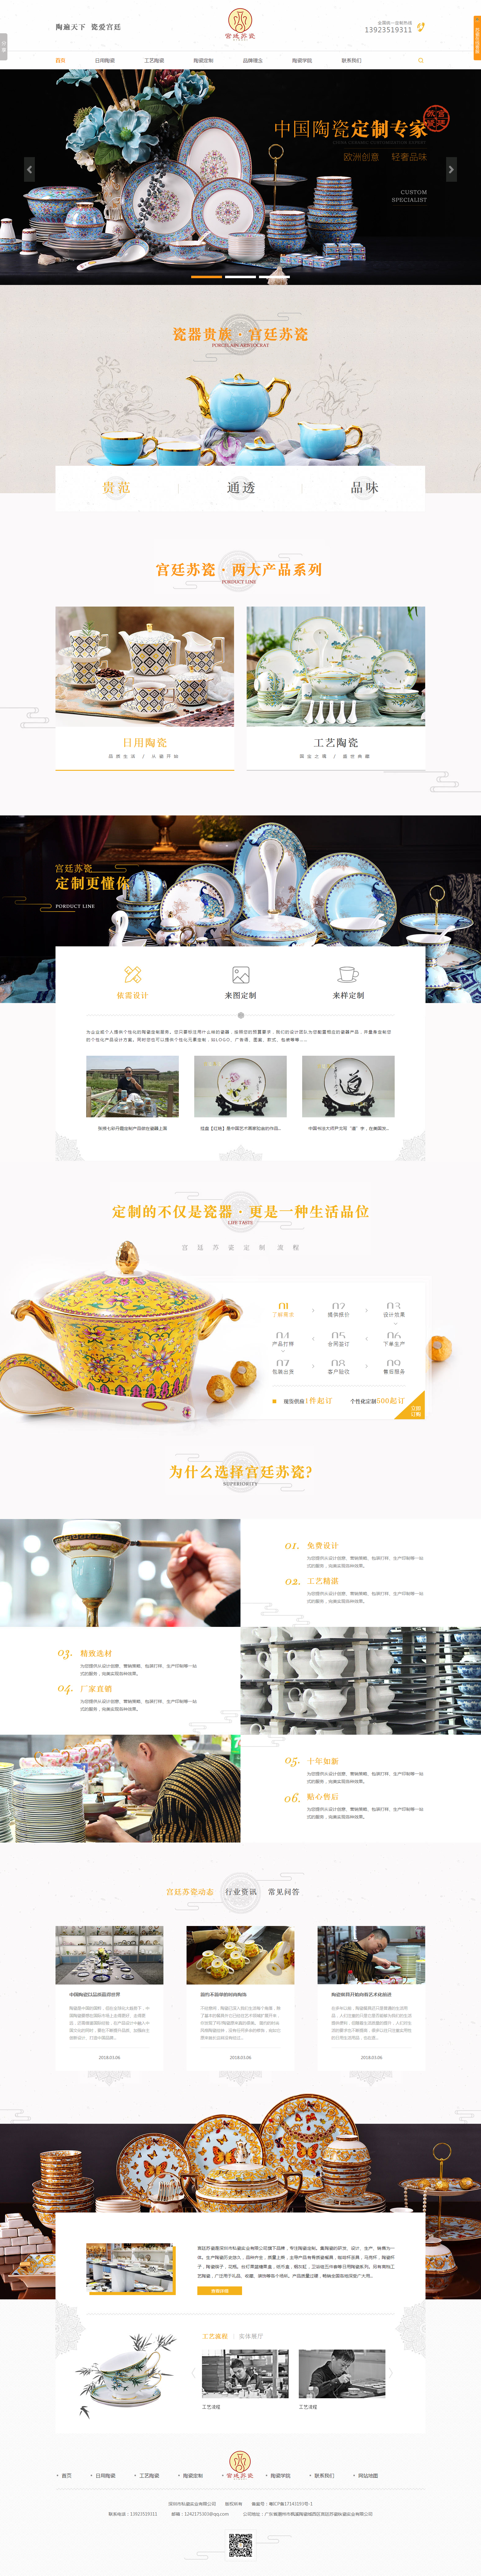 宫廷苏瓷营销型网站案例-追马网